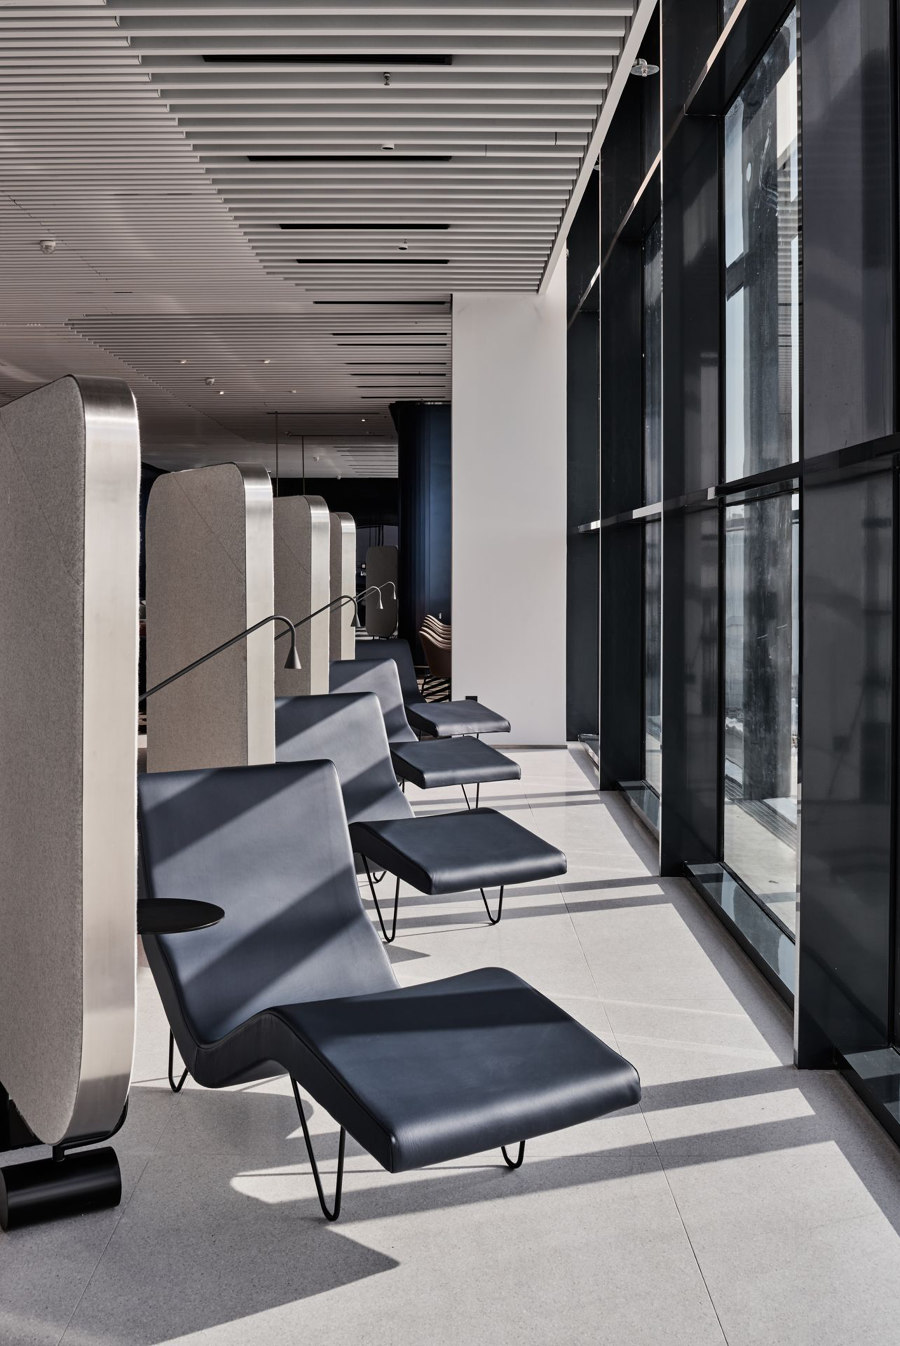 Aegean Business Lounge - AIA von Twelve Concept | Herstellerreferenzen